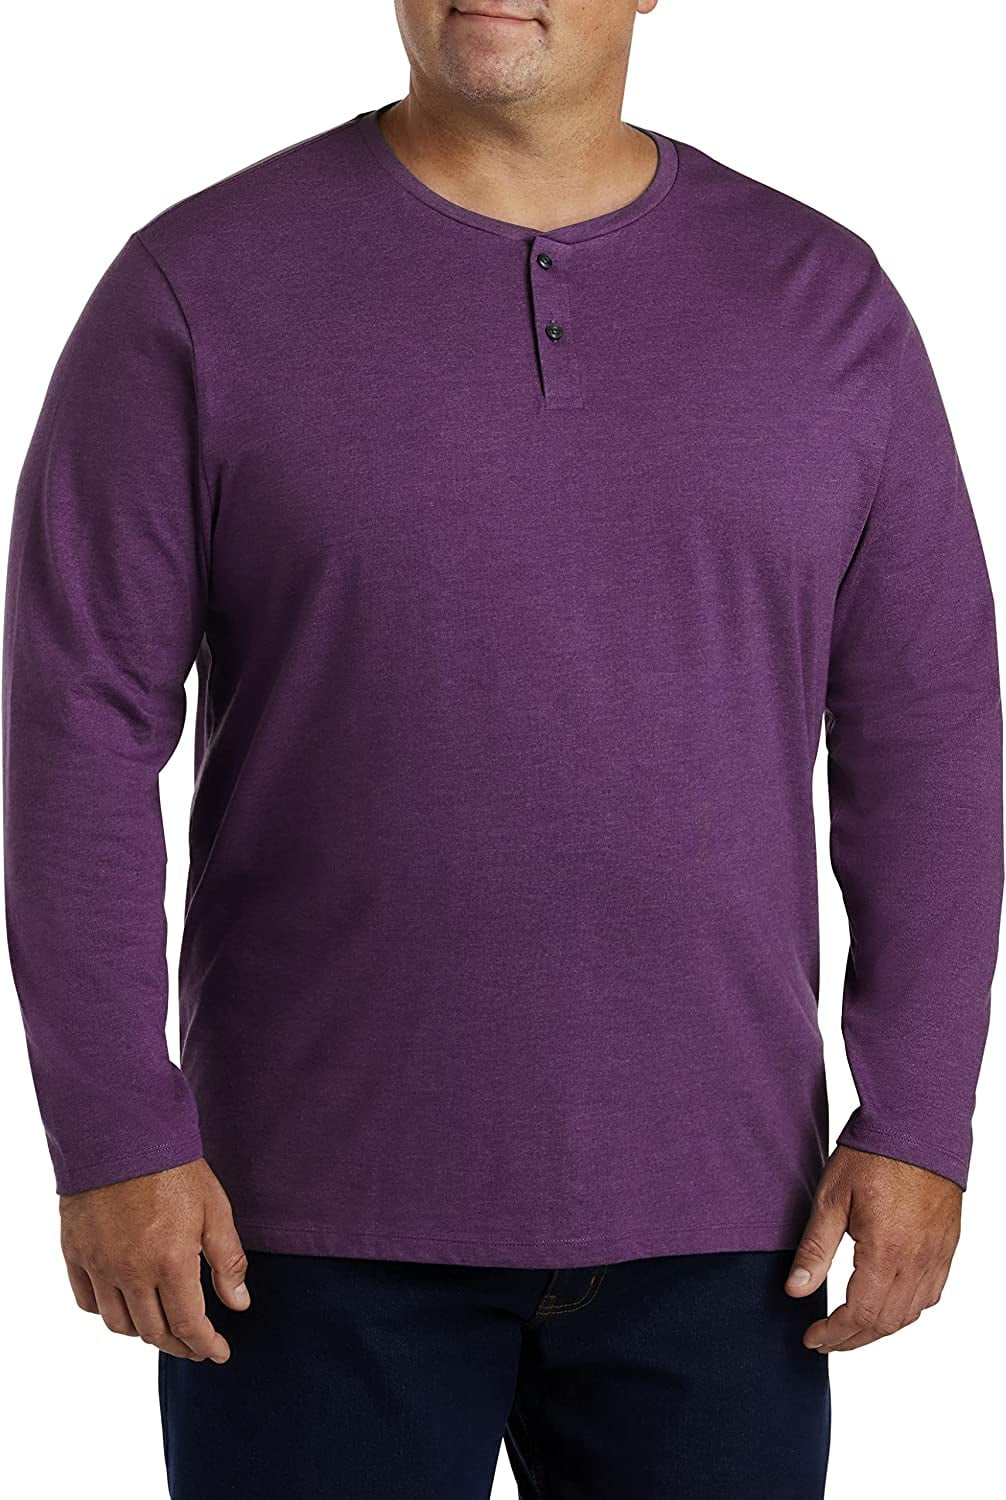 Big and Tall Essentials by DXL Men's Long-Sleeve Henley Shirt, Purple, 2XL